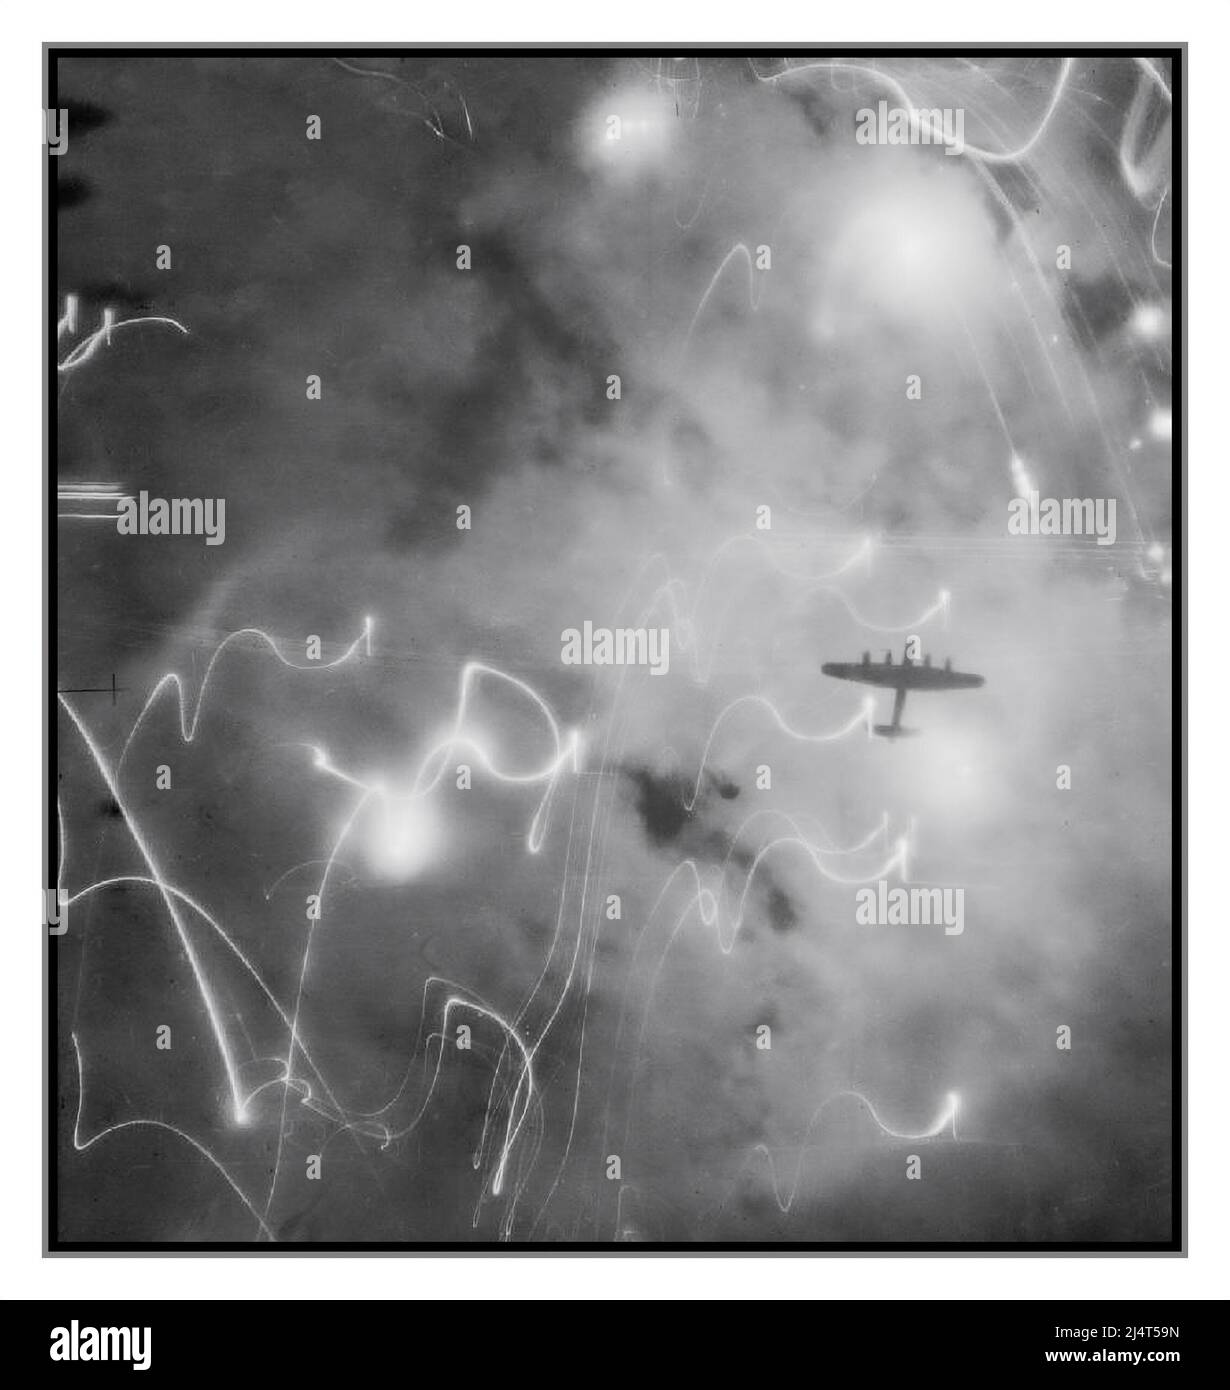 BOMBENANSCHLAG NACHT 2. Weltkrieg HAMBURG bemerkenswertes Aufklärungsbild, das das Chaos von Fackeln und feindlichem Feuer mit alliierten Bombenangriffen über Nazi-Deutschland veranschaulicht. Ein Avro Lancaster des No. 1 Group Bomber Command, Silhouetten gegen Fackeln, Rauch und Explosionen während des Angriffs auf Hamburg, Deutschland, mit Flugzeugen der Nr. 1, 5 und 8 Gruppen in der Nacht vom 30/31. Januar 1943. Dieser Angriff war die erste Gelegenheit, bei der das H2S-Zentimeterradar von den Pathfinder-Flugzeugen zur Navigation des Bombenangriffs eingesetzt wurde. Damit wir nicht den Mut und das große Opfer der britischen Bomberkommandos der RAF vergessen Stockfoto